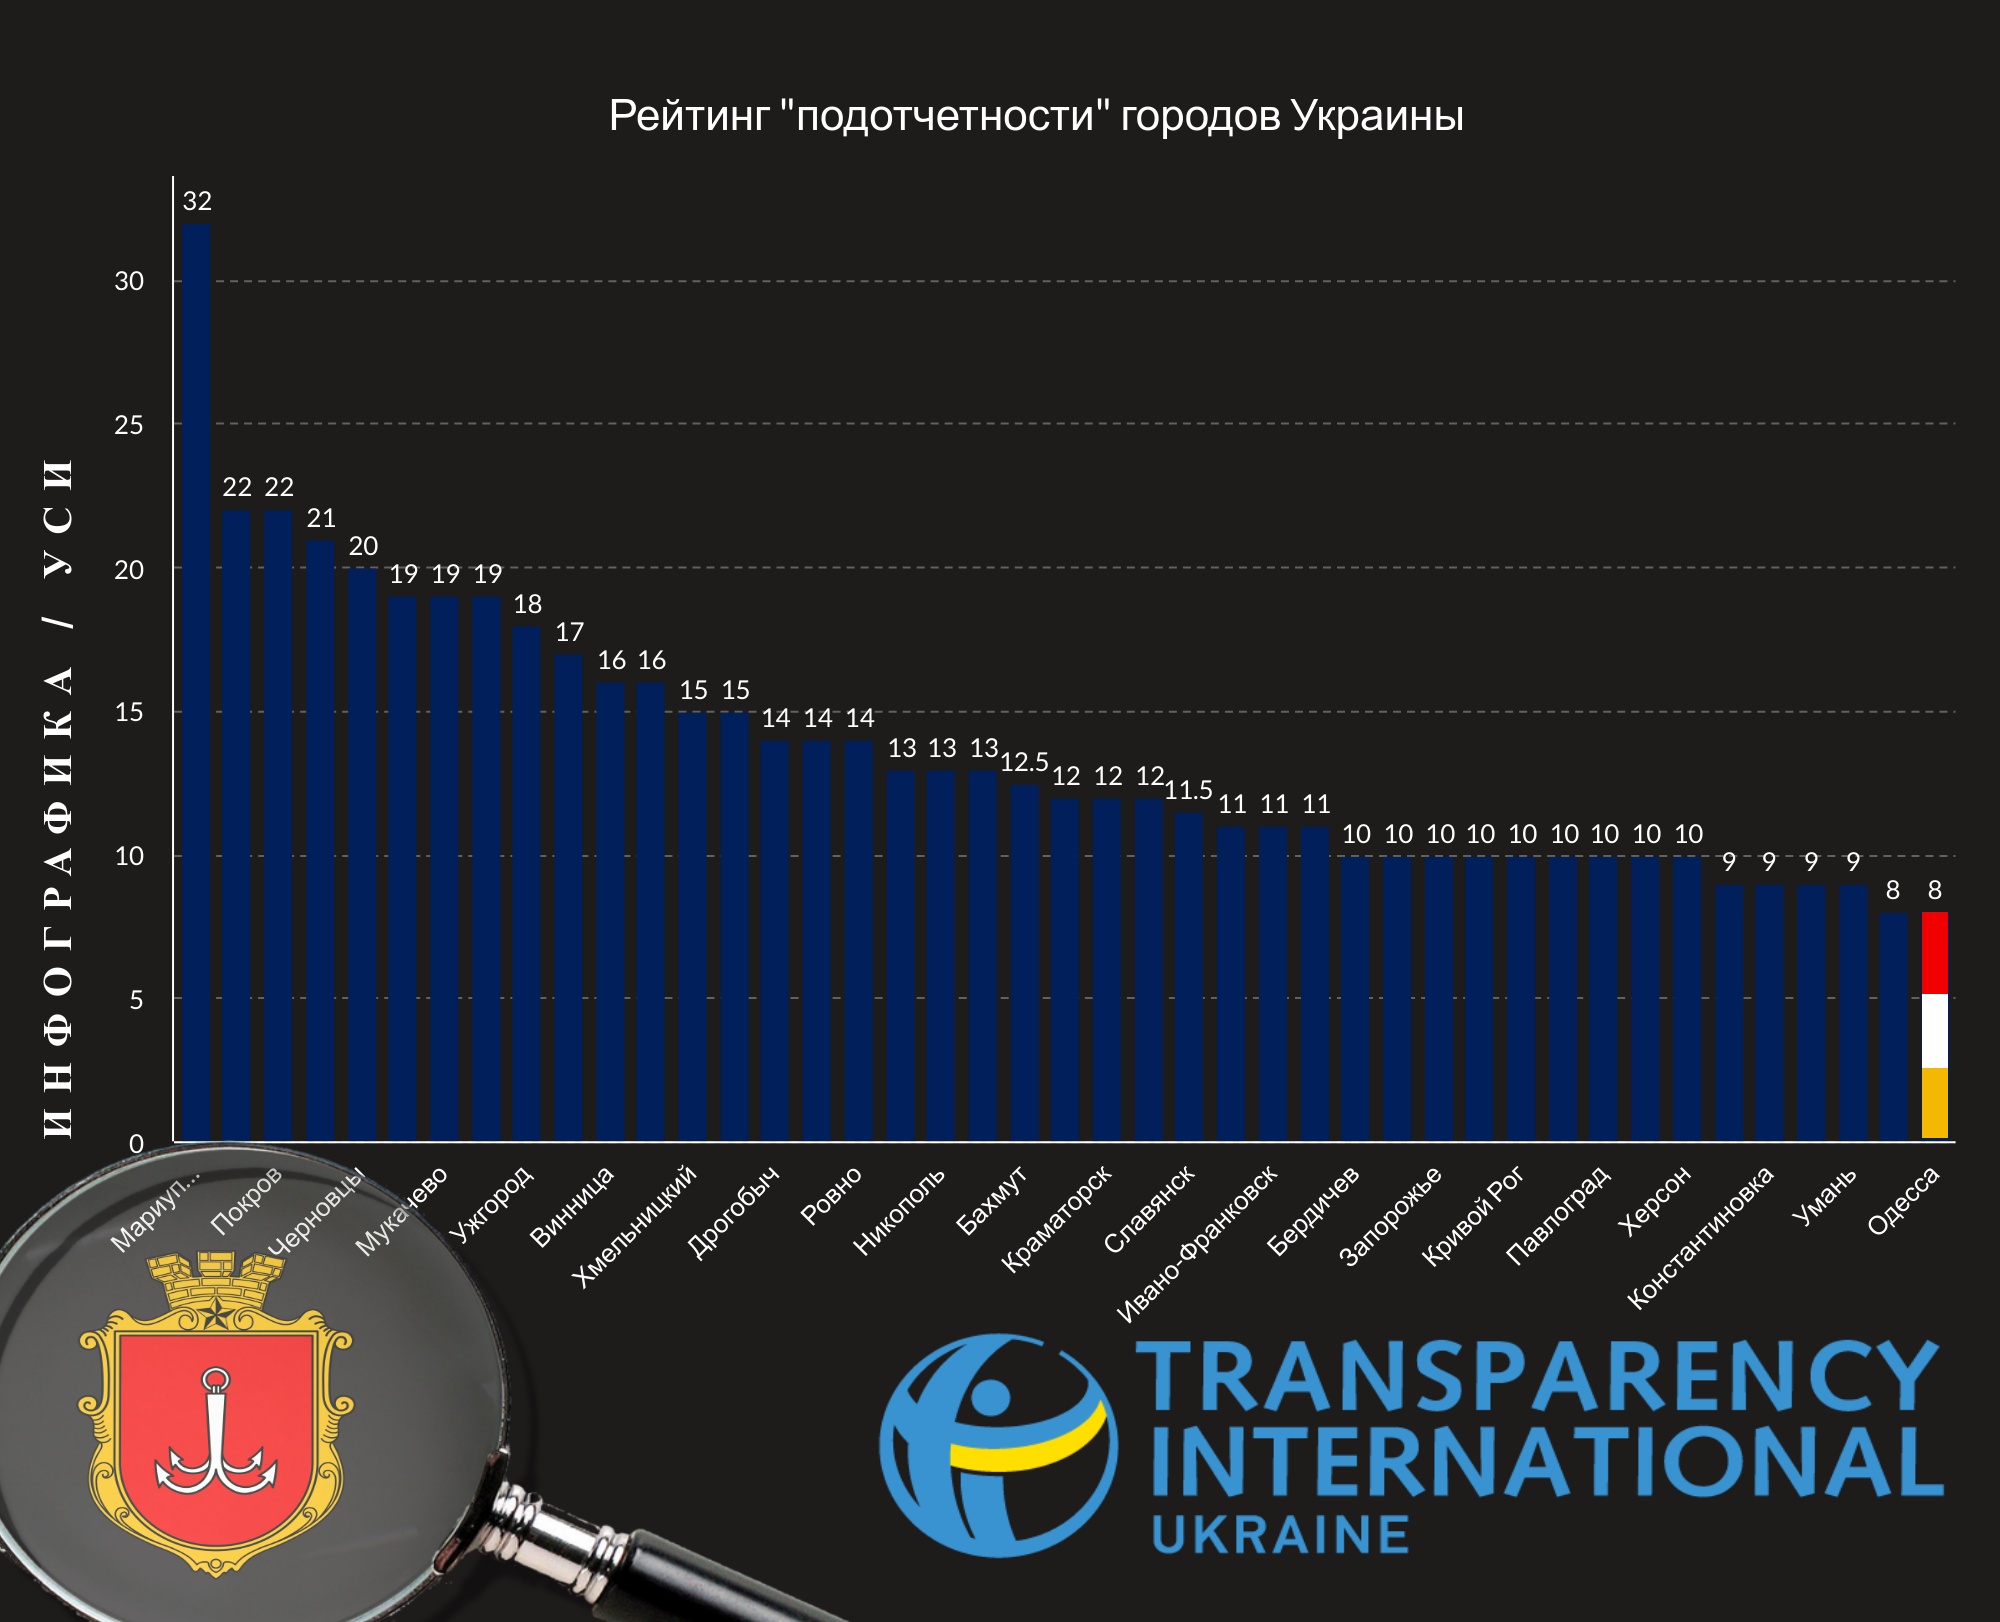 Одесса поднялась в рейтинге "прозрачности", но упала по "подотчетности"  (фото) — УСИ Online